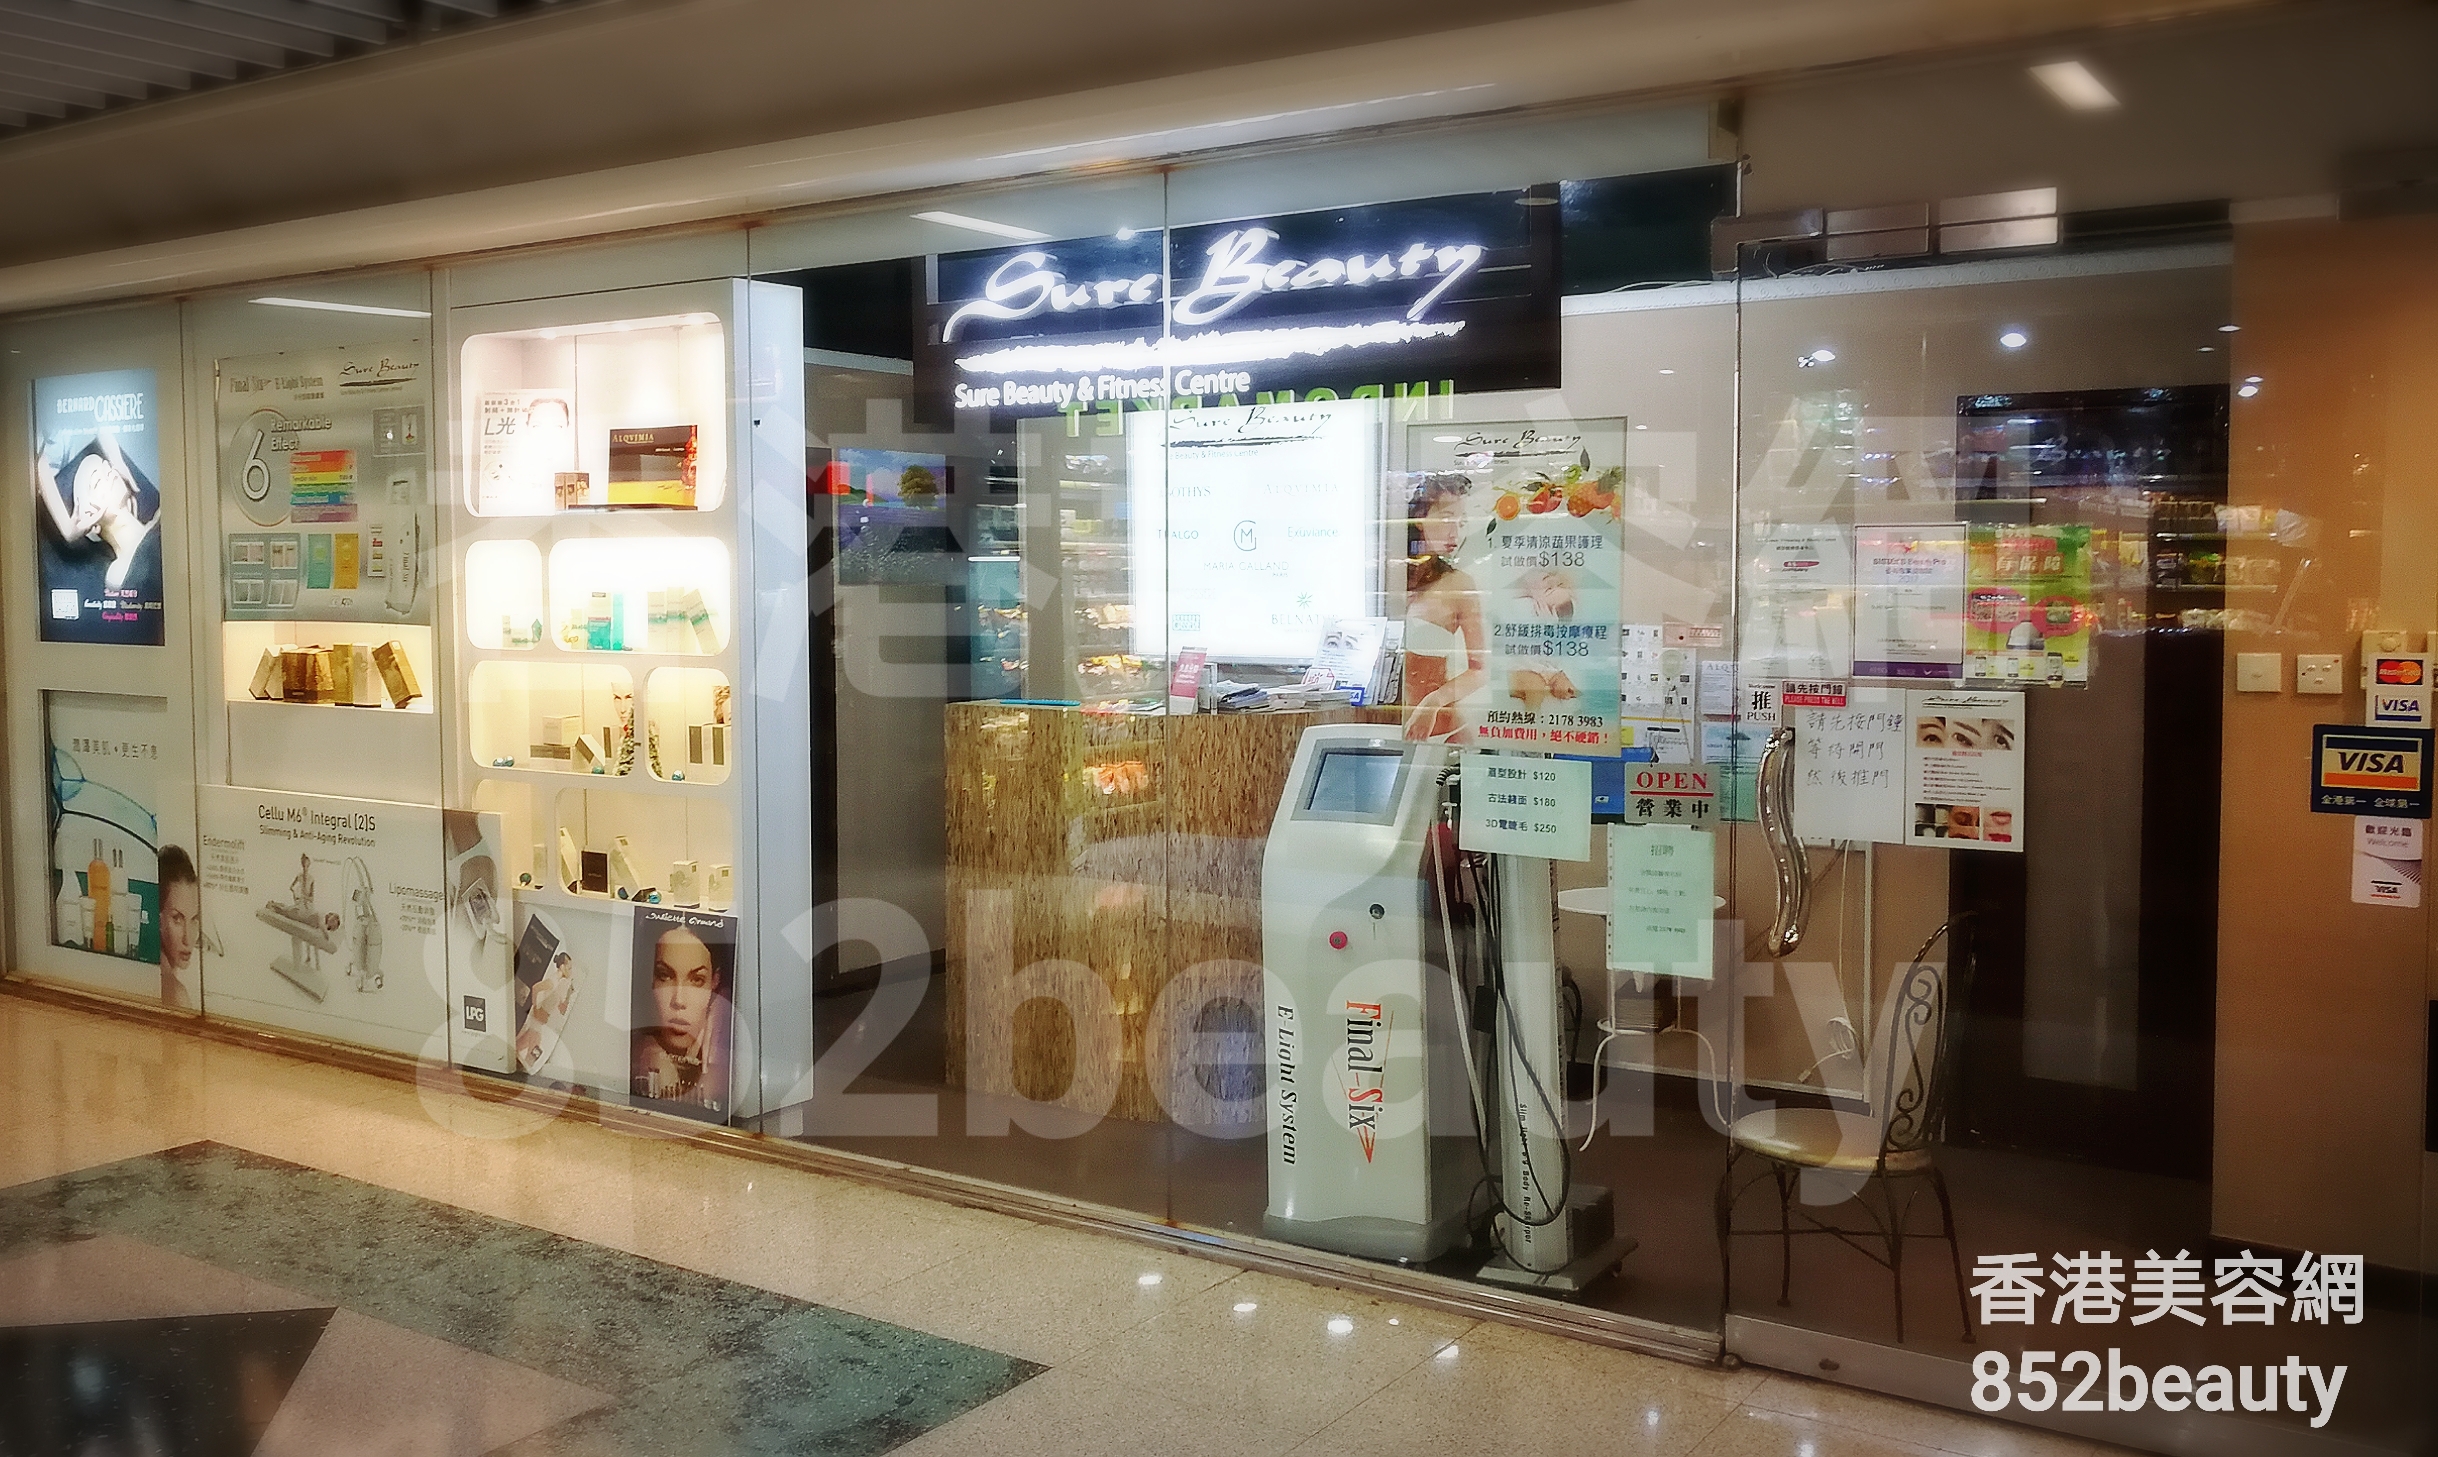 香港美容網 Hong Kong Beauty Salon 美容院 / 美容師: Sure Beauty (將軍澳分店)